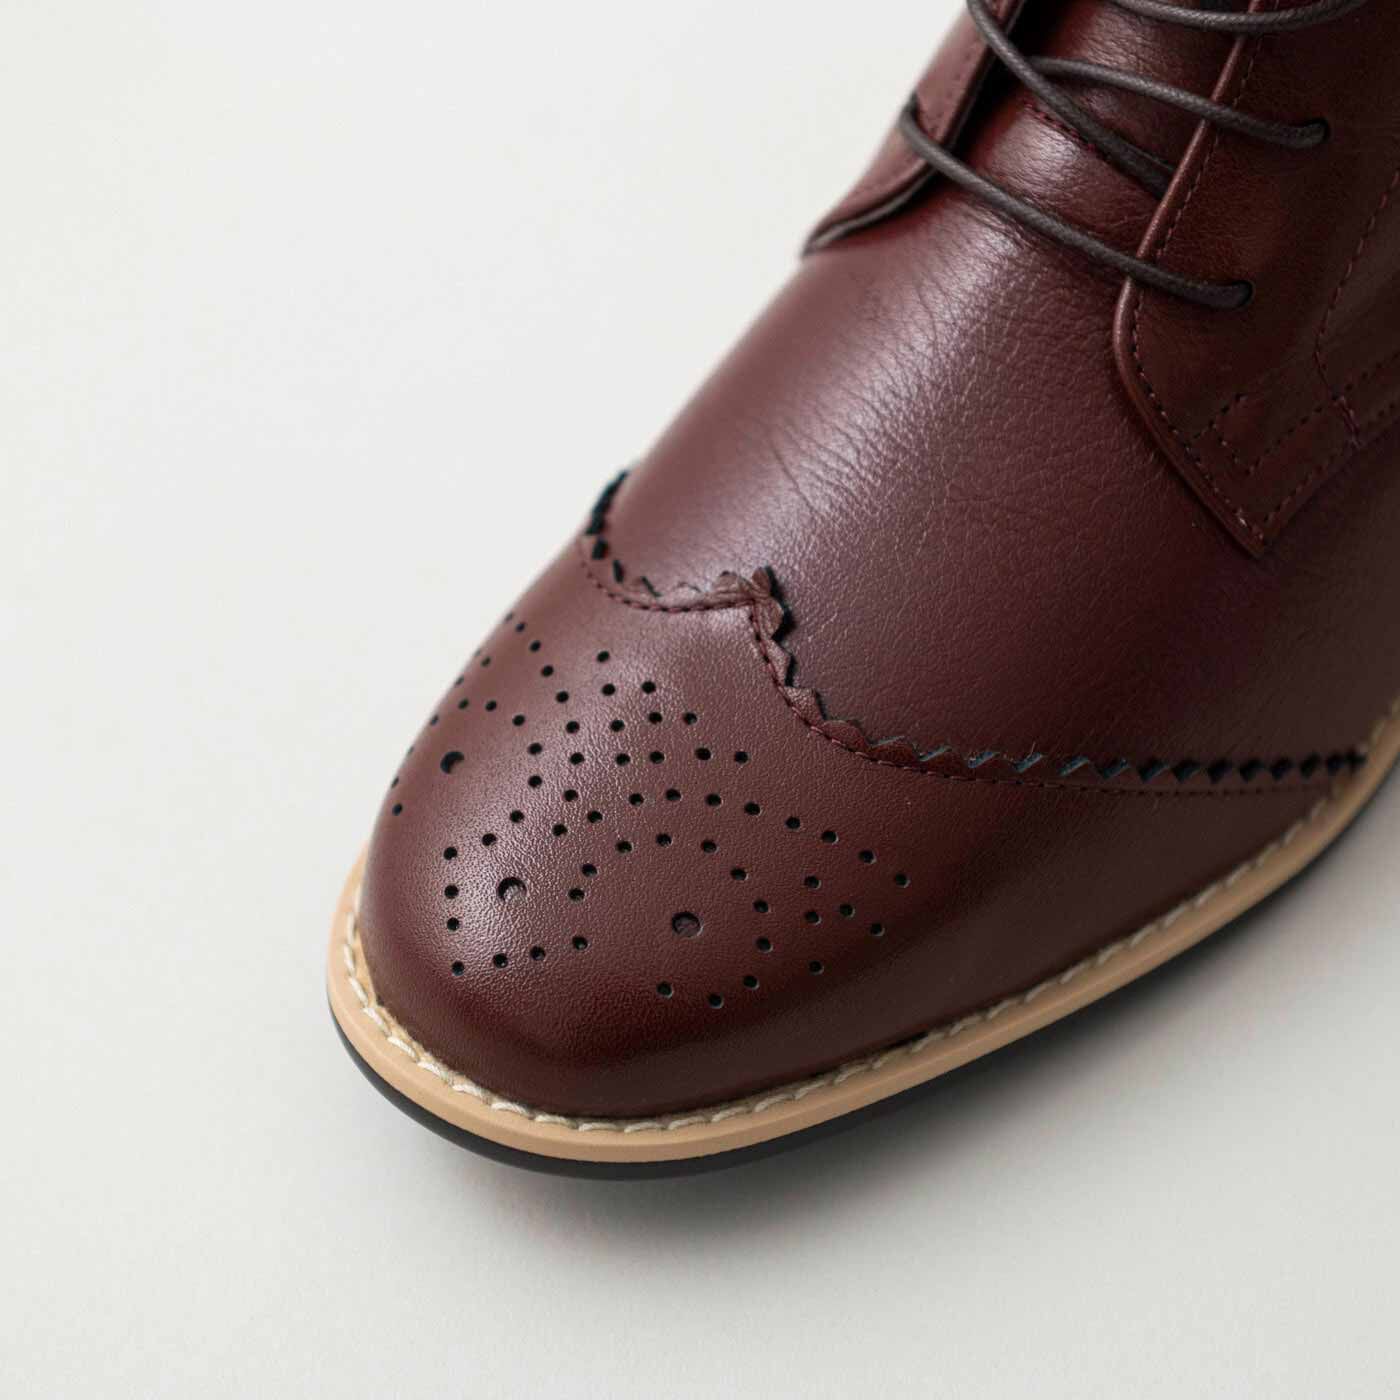 ＆Stories|長田の靴職人が作った　職人本革のウィングチップブーツ〈レッドブラウン〉|メンズライクな装飾ながら、さりげないアクセントで着こなしをクラスアップしてくれます。